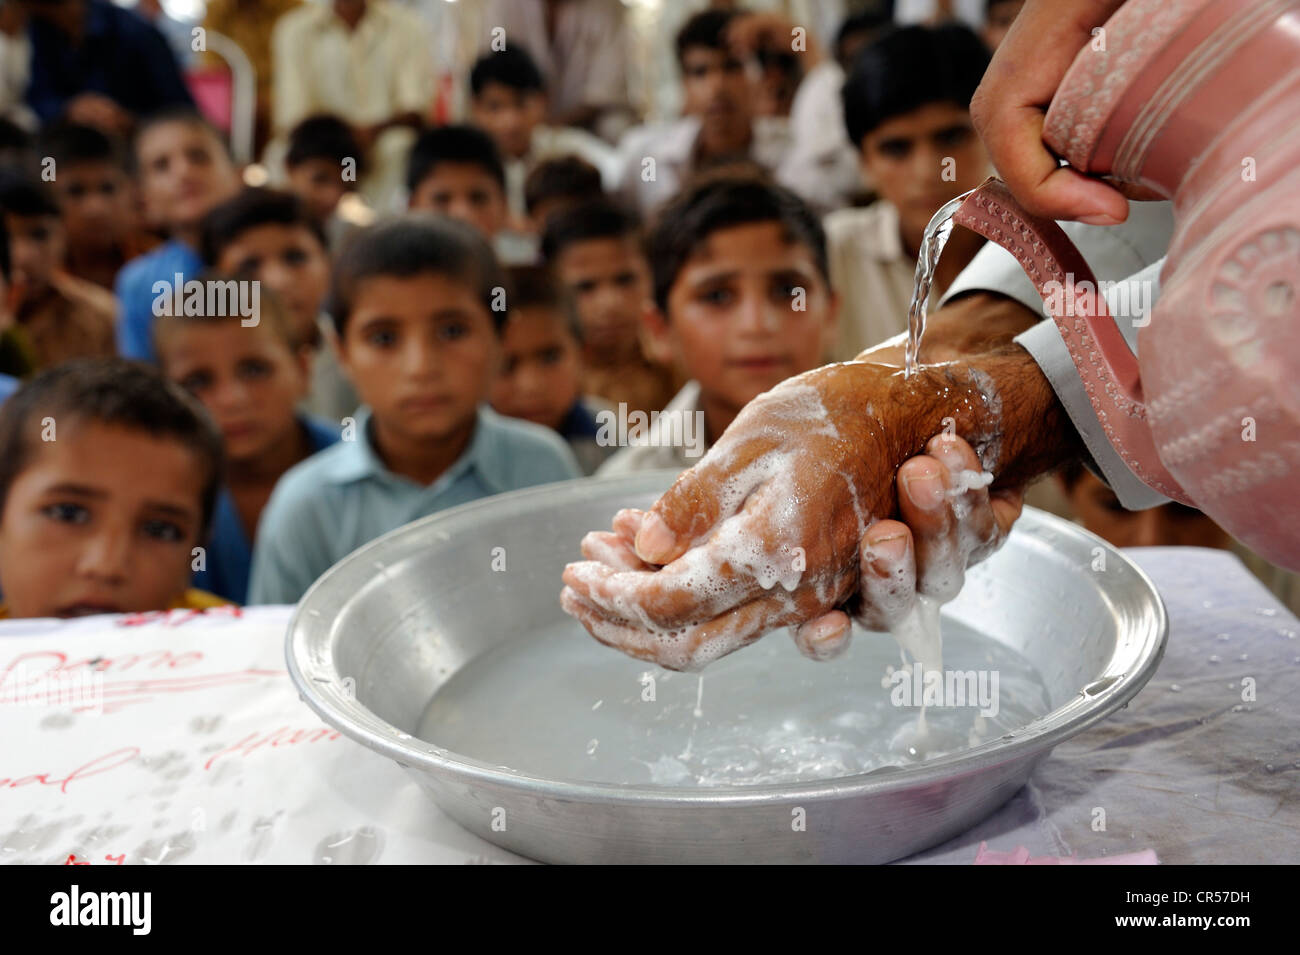 Hygieneerziehung Herrenkonfektion und Knabenkonfektion, Anweisungen zum Händewaschen, Lashari Wala Dorf, Punjab, Pakistan, Asien Stockfoto